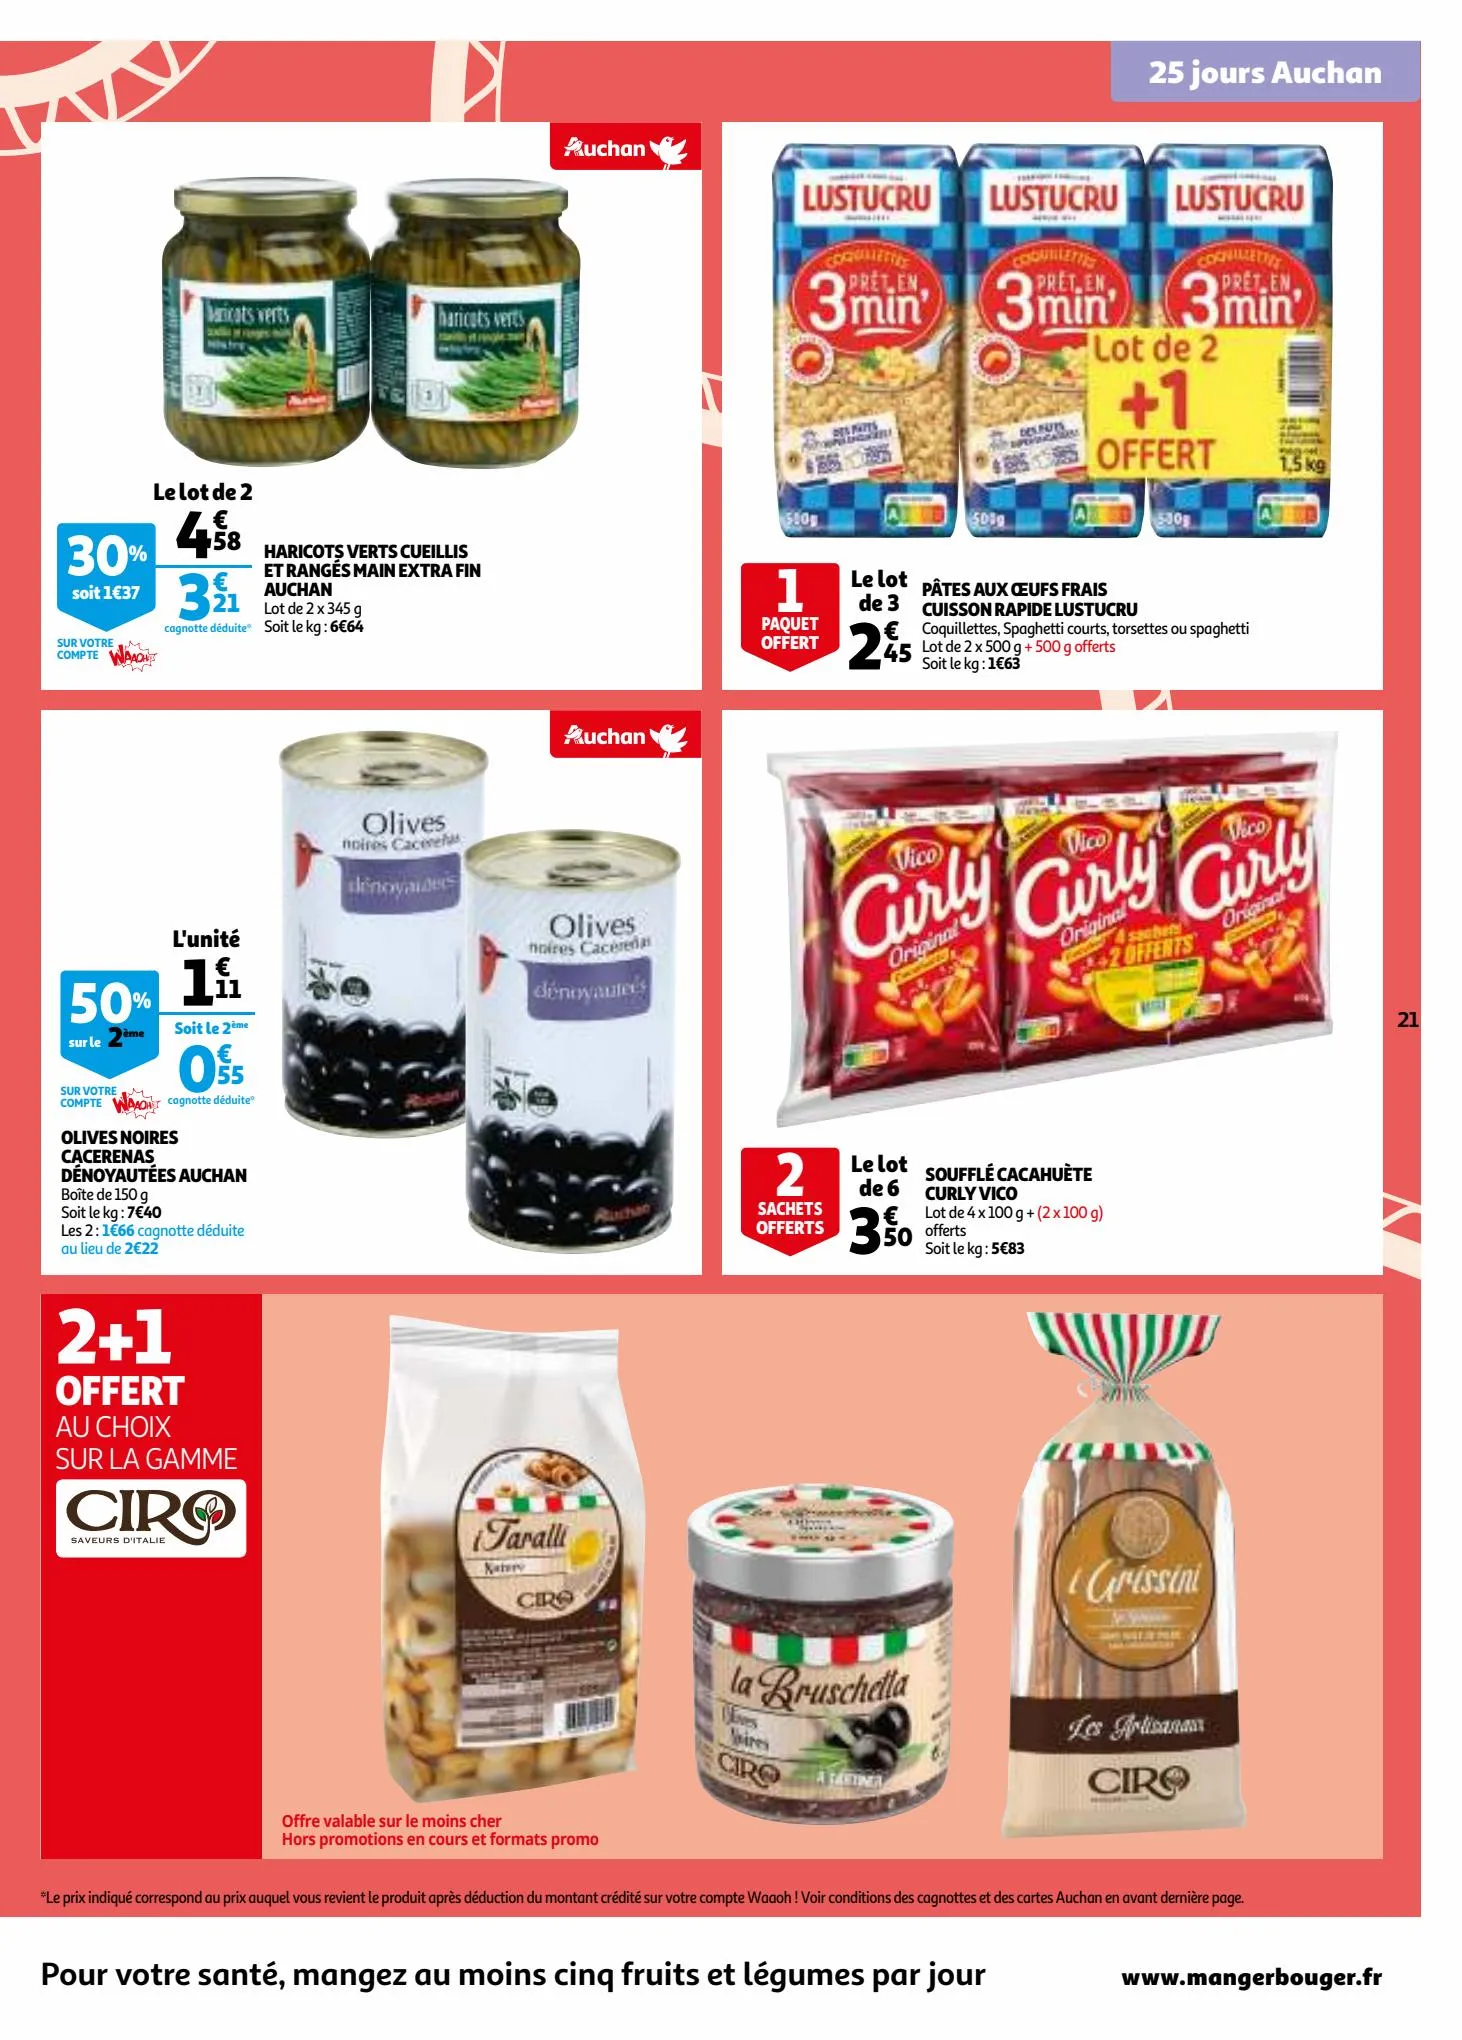 Catalogue 25 jours Auchan, page 00021